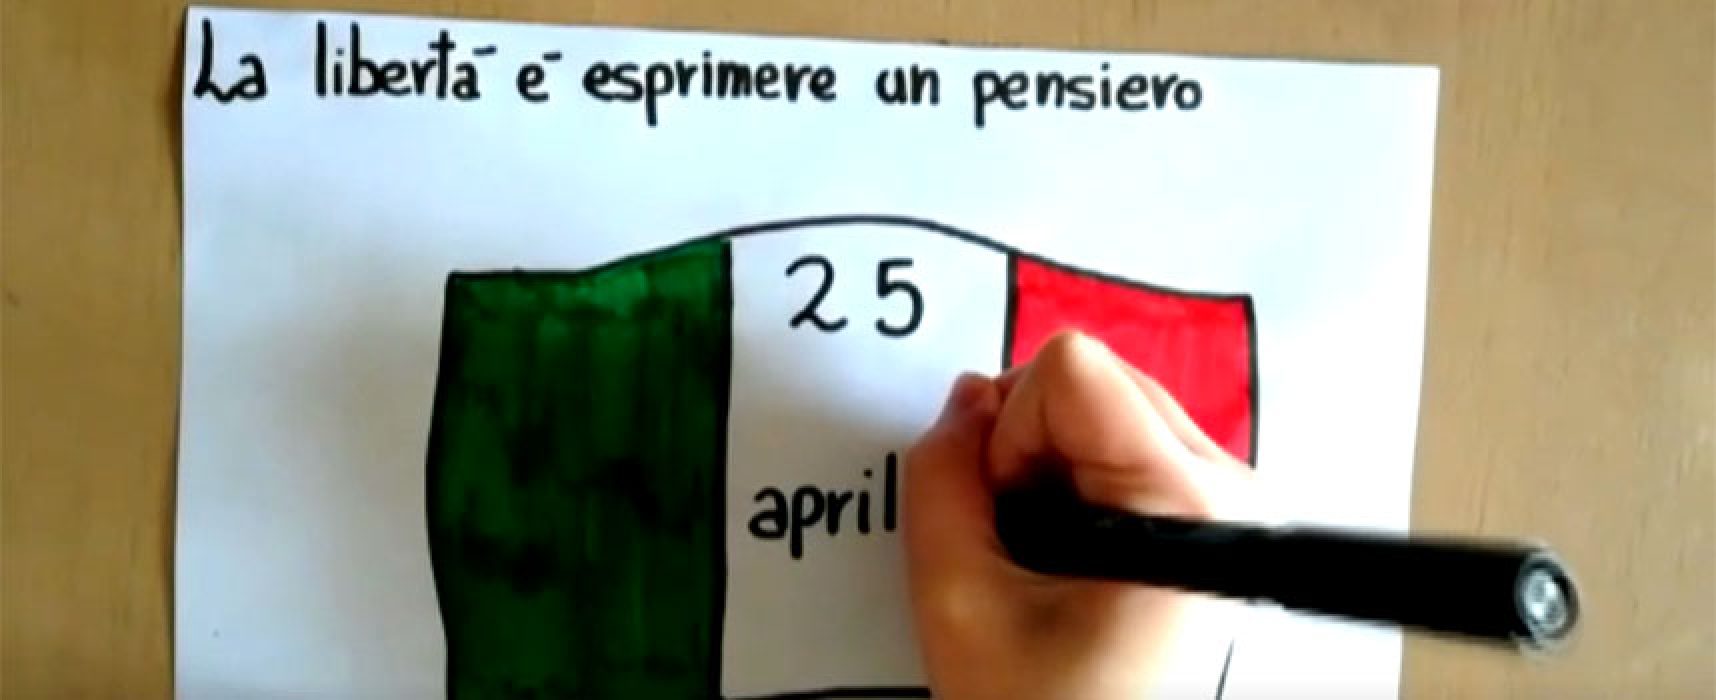 Anniversario Liberazione, Sindaco Angarano invia VIDEO a studenti scuole elementari e medie